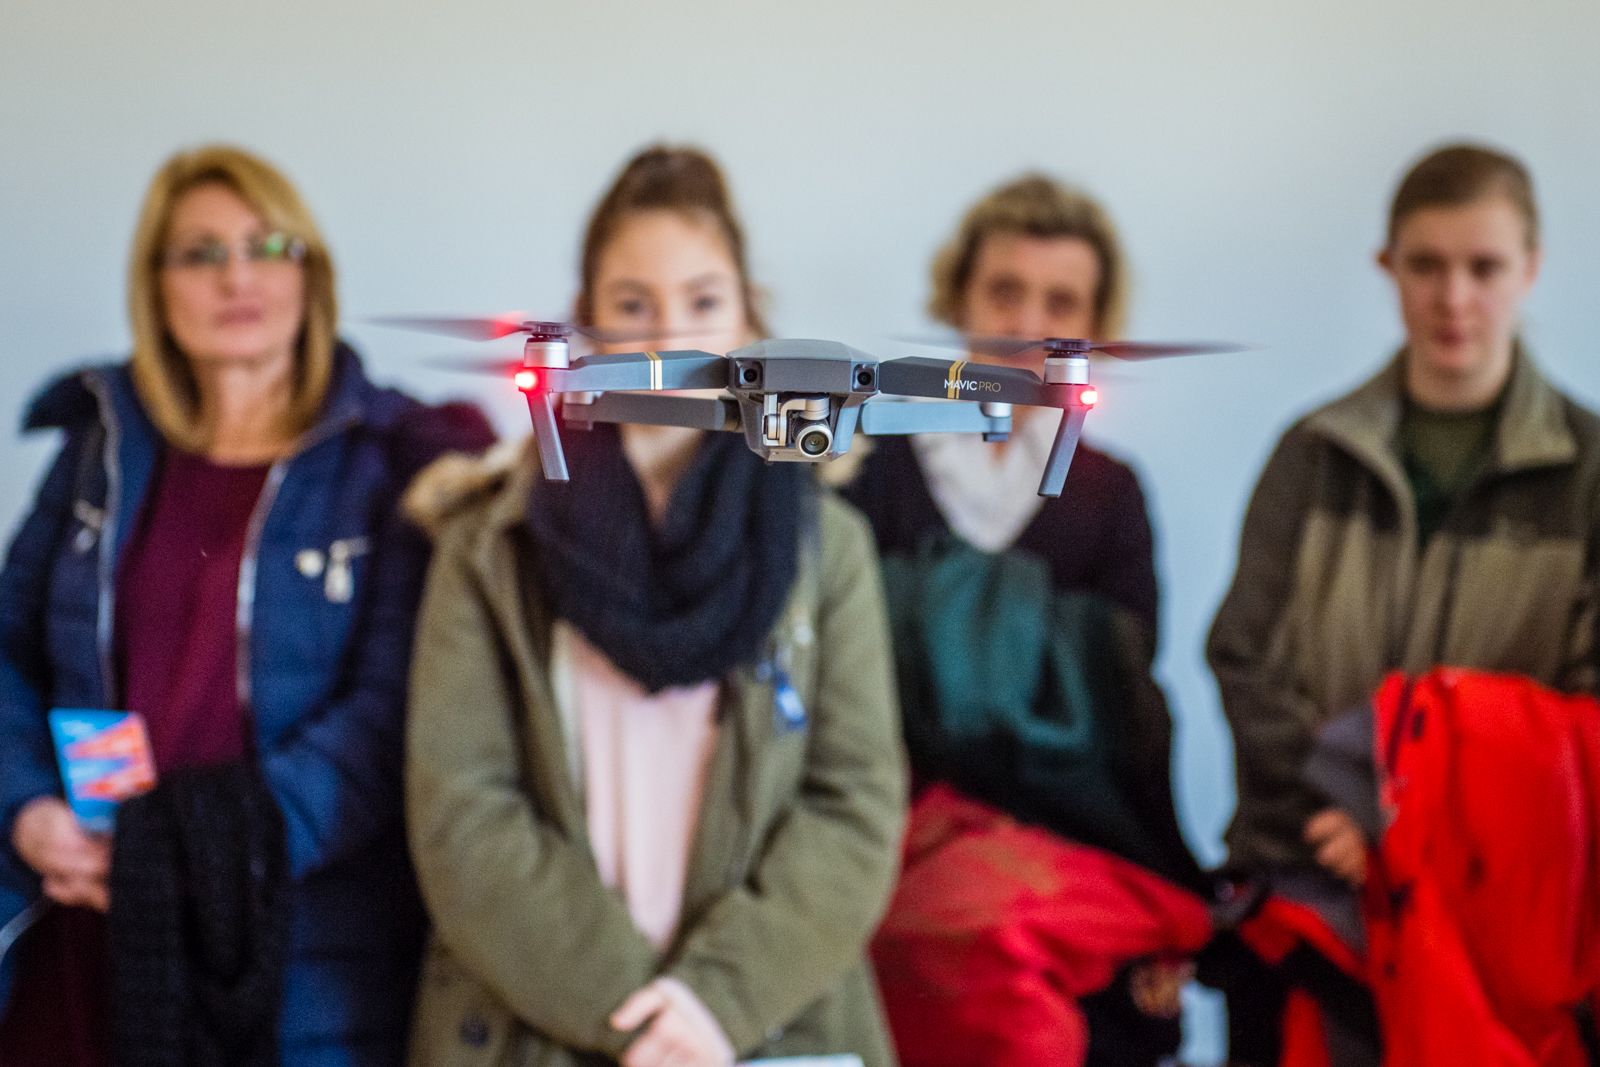 Duális képzések, drónok és lego robotok - nyílt nap az OE Alba Regia Műszaki Karon